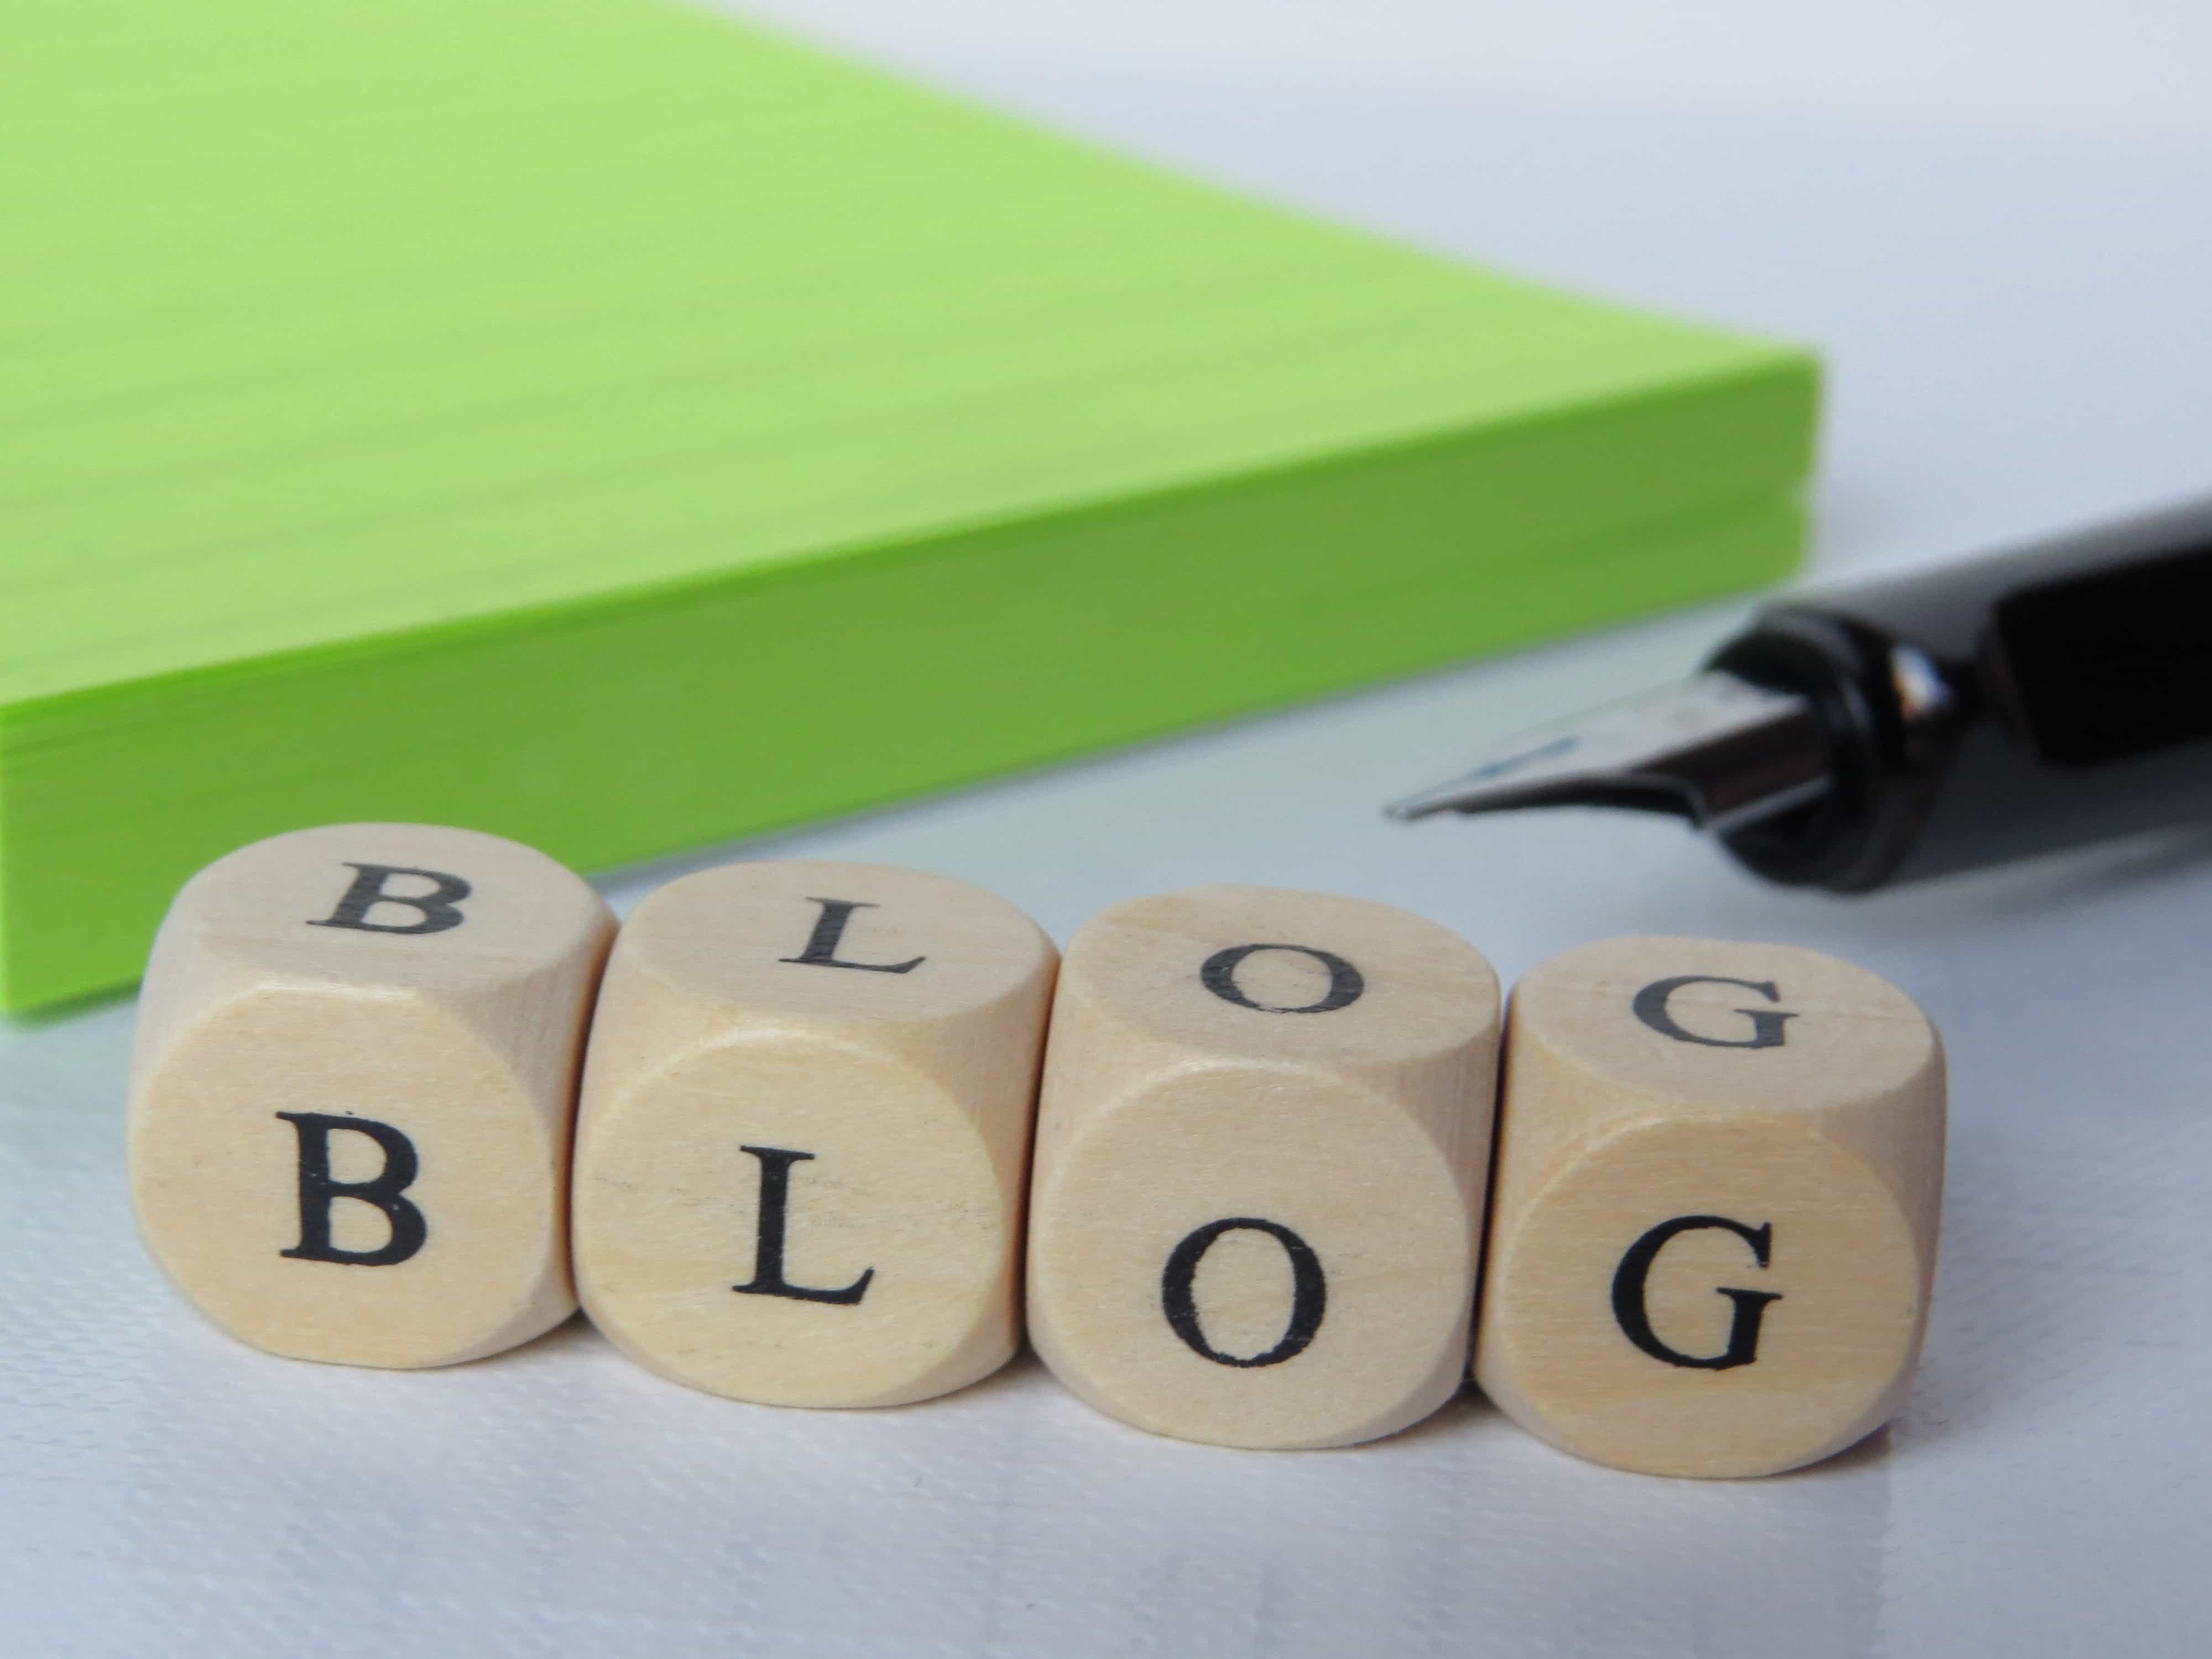 Blogs de contenidos. Cómo crear uno interesante para tu empresa